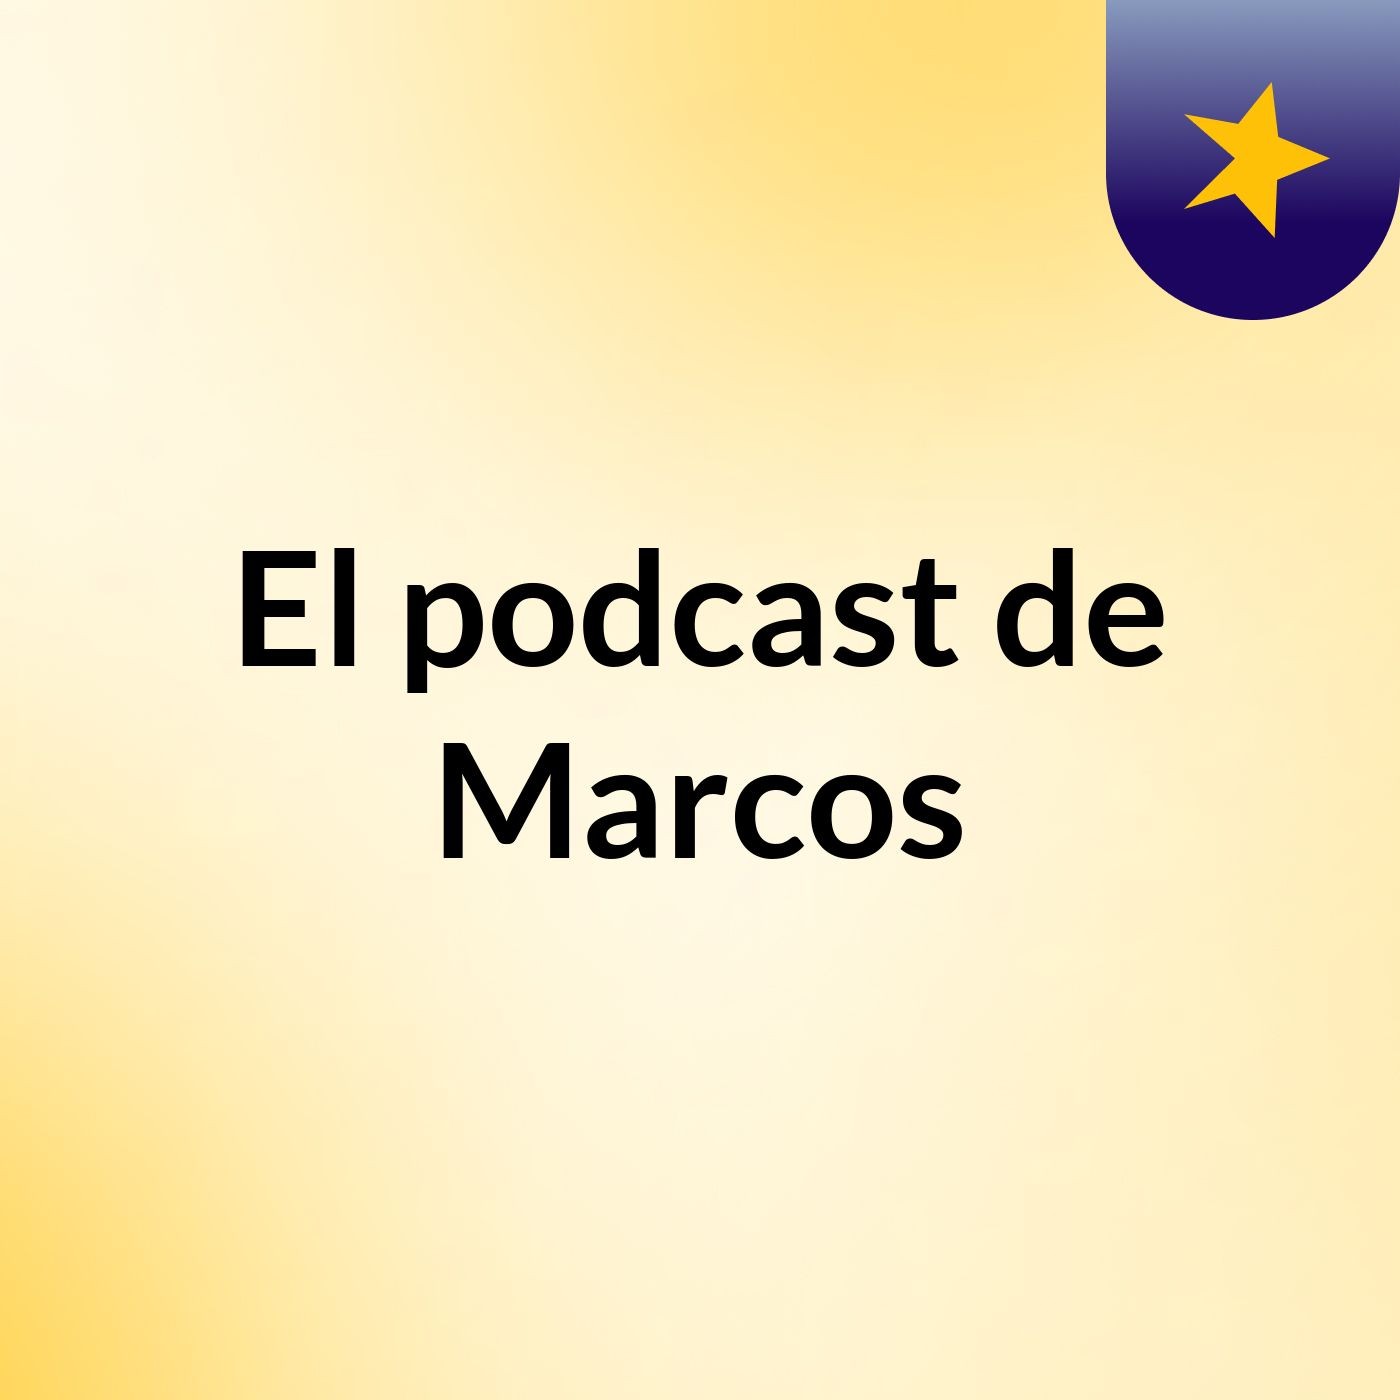 El podcast de Marcos